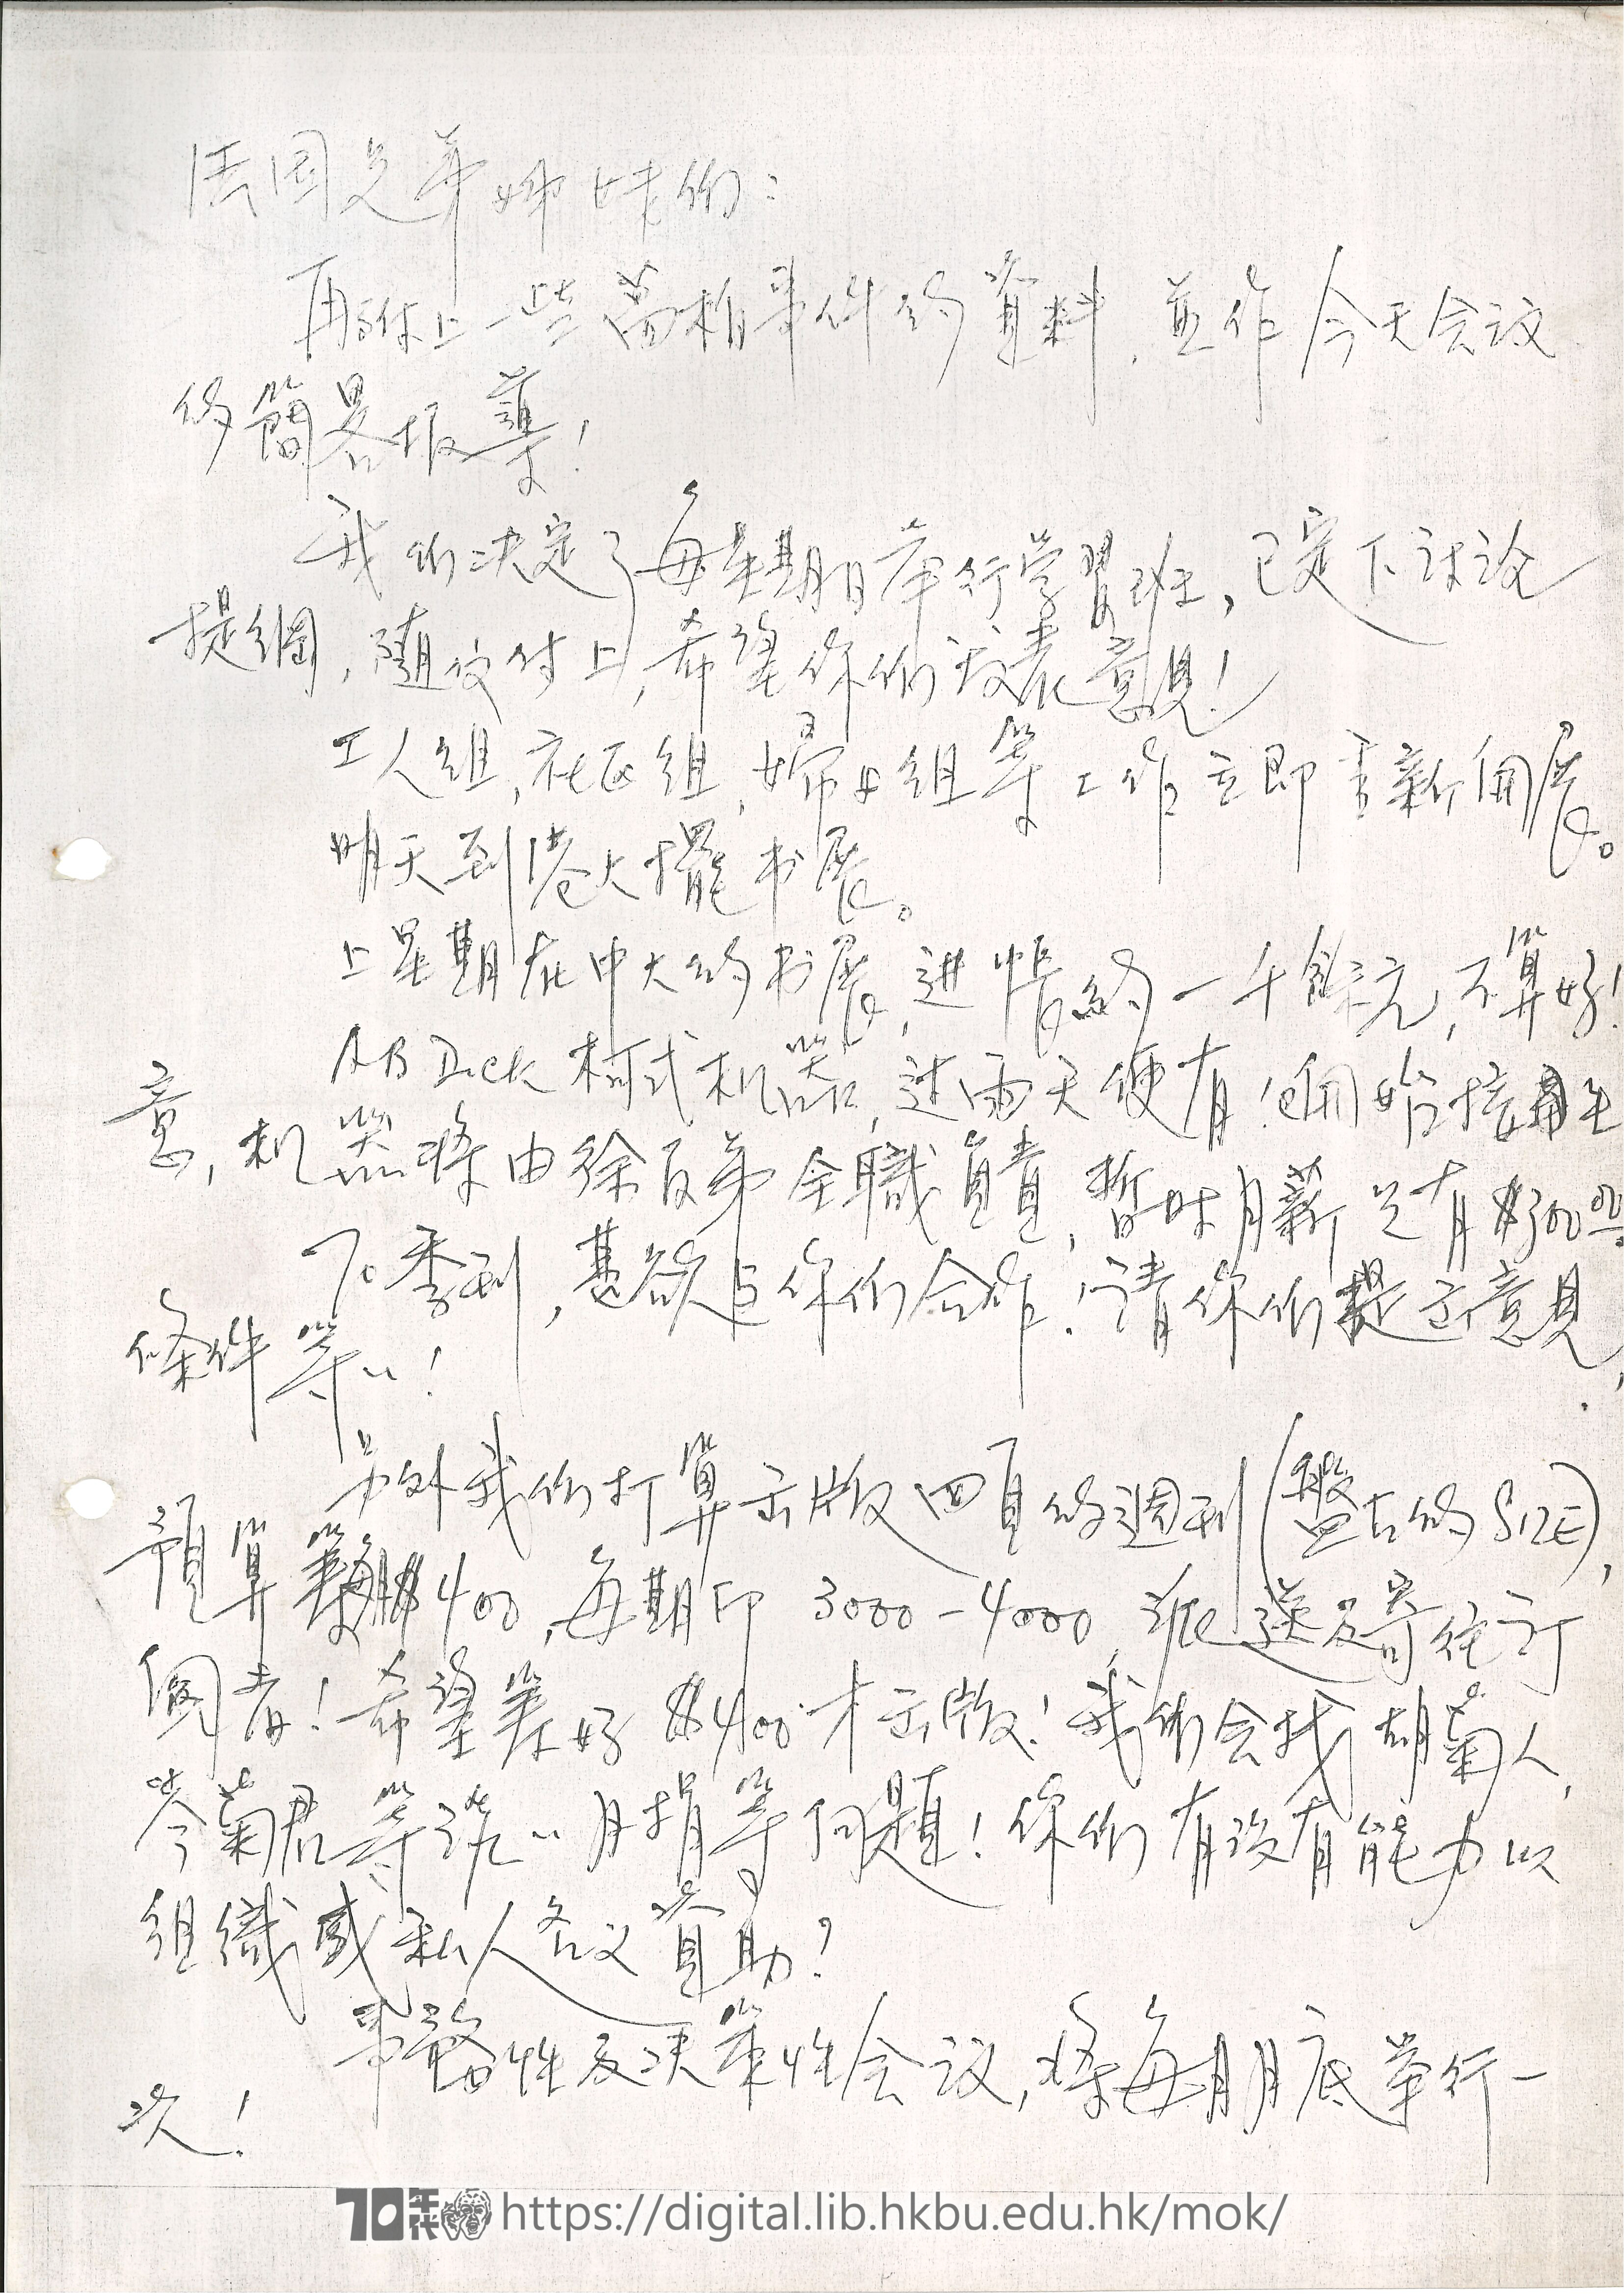   Letter from Mok Chiu Yu to France Branch MOK, Chiu Yu 